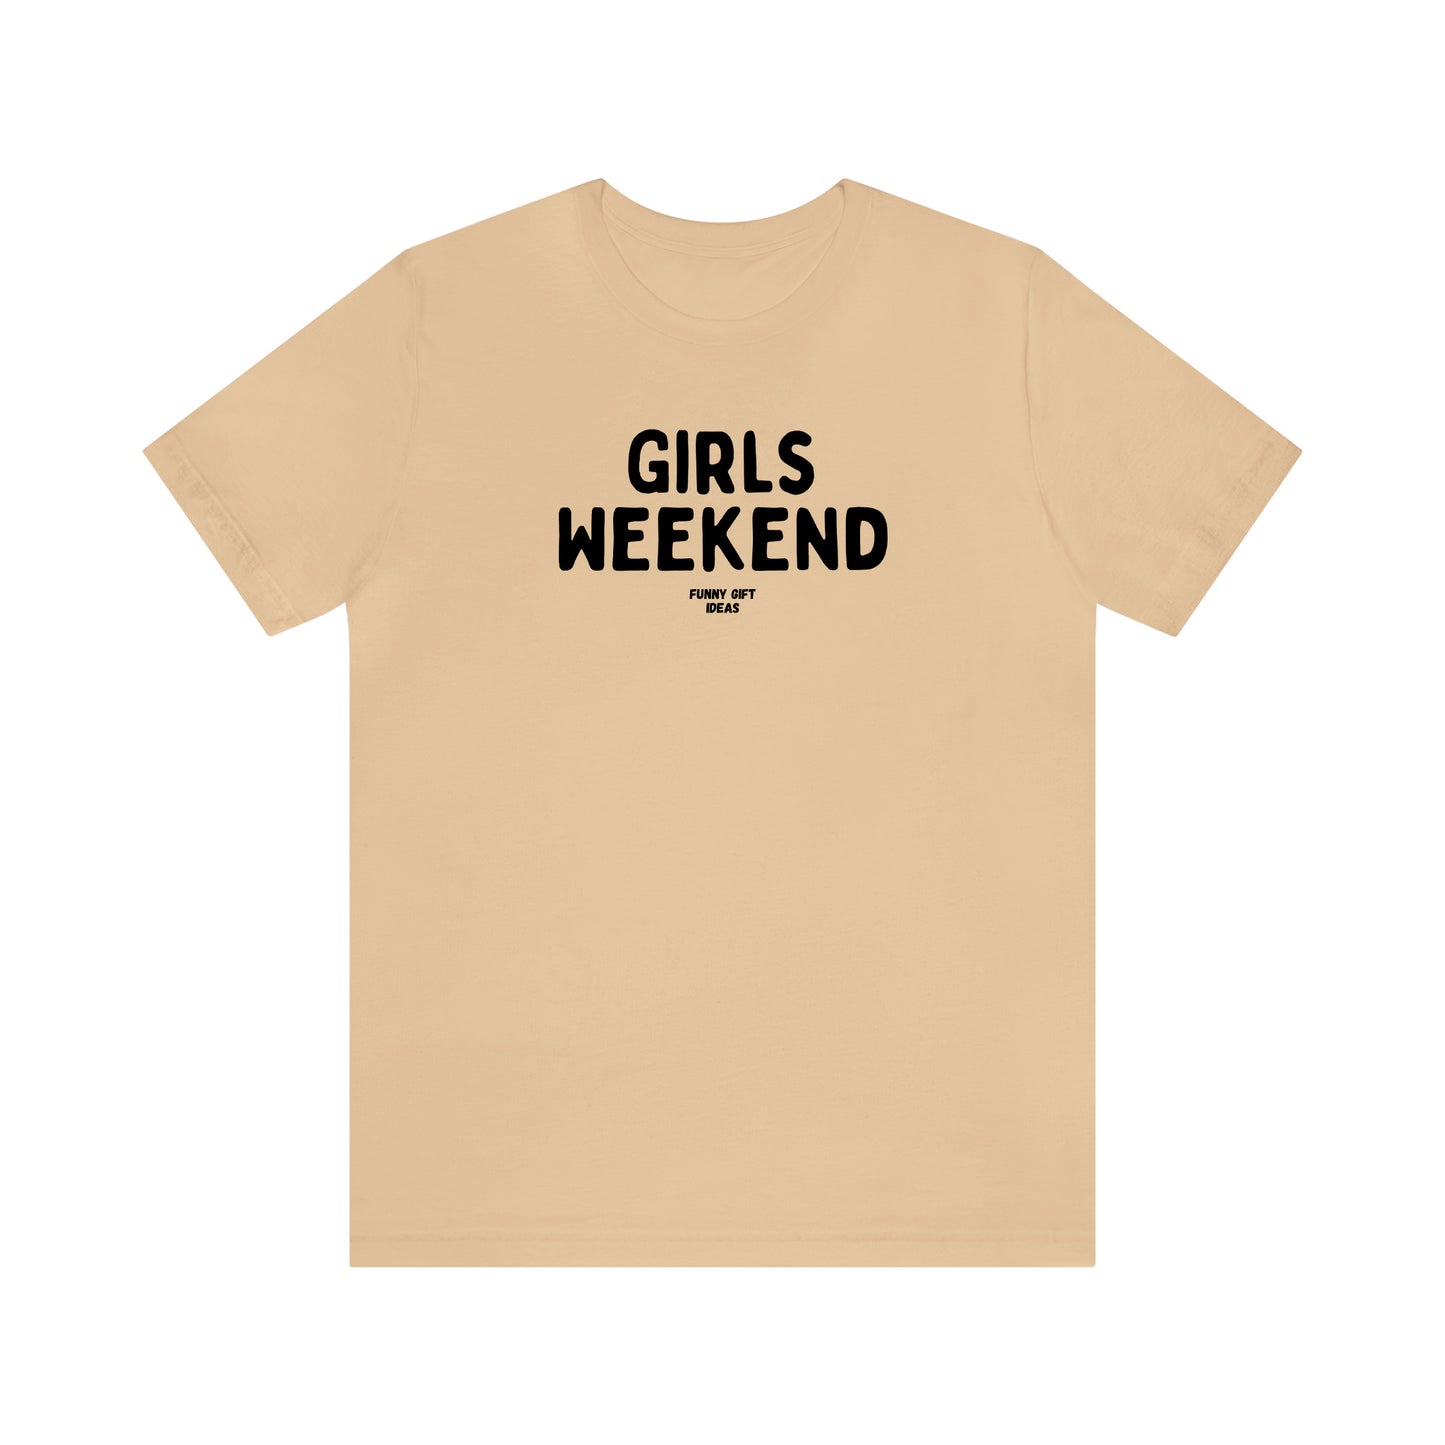 Funny Shirts for Women - Girls Weekend - Women's T Shirts